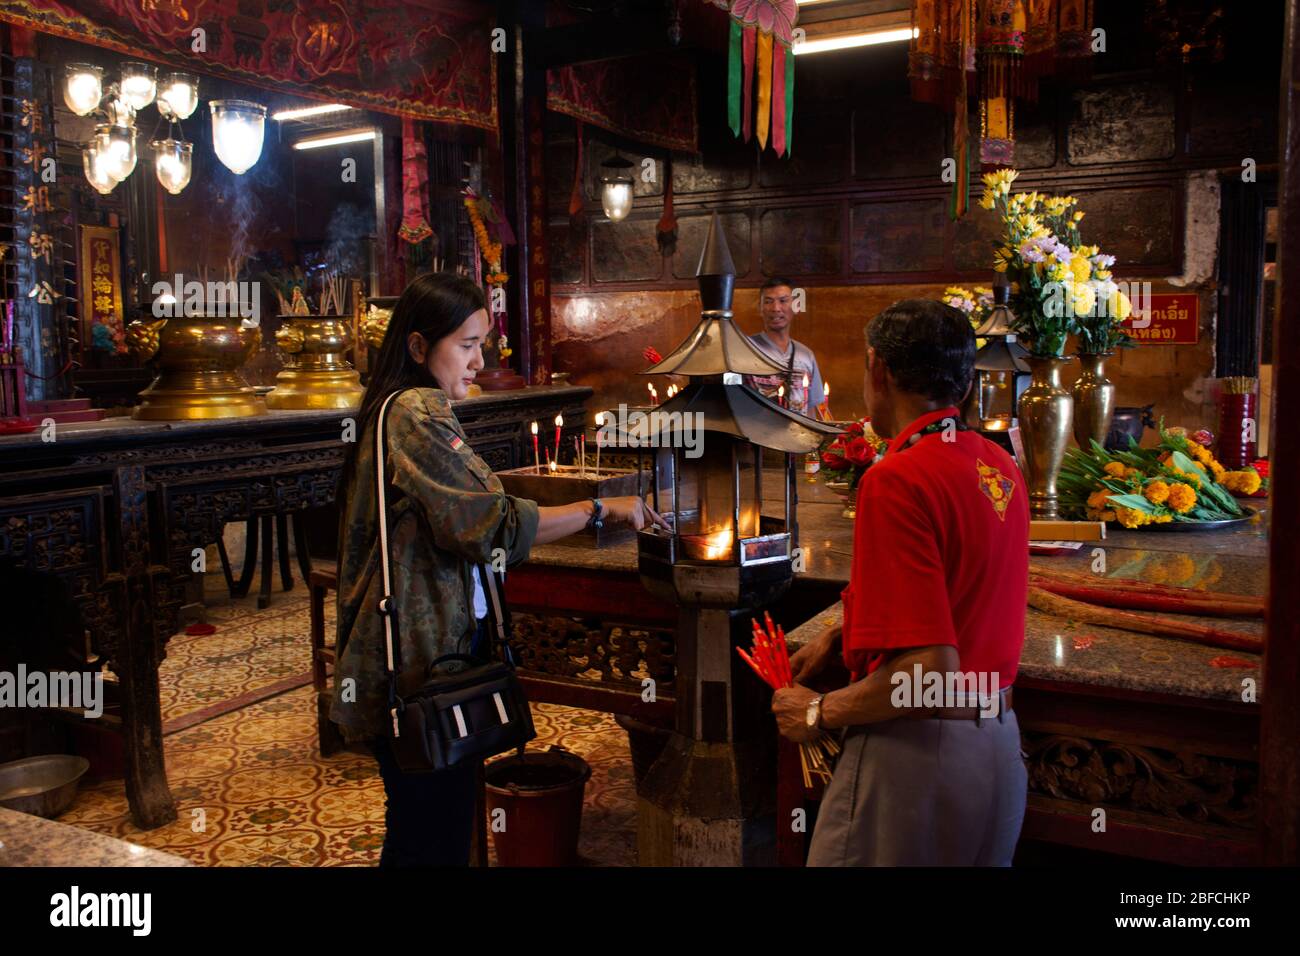 PATTANI, THAÏLANDE - 16 août : les thaïlandais et les voyageurs étrangers voyagent visite et respect prient dans Leng Chu Kiang ou Chao Mae Lim Ko Niao chinois Shri Banque D'Images